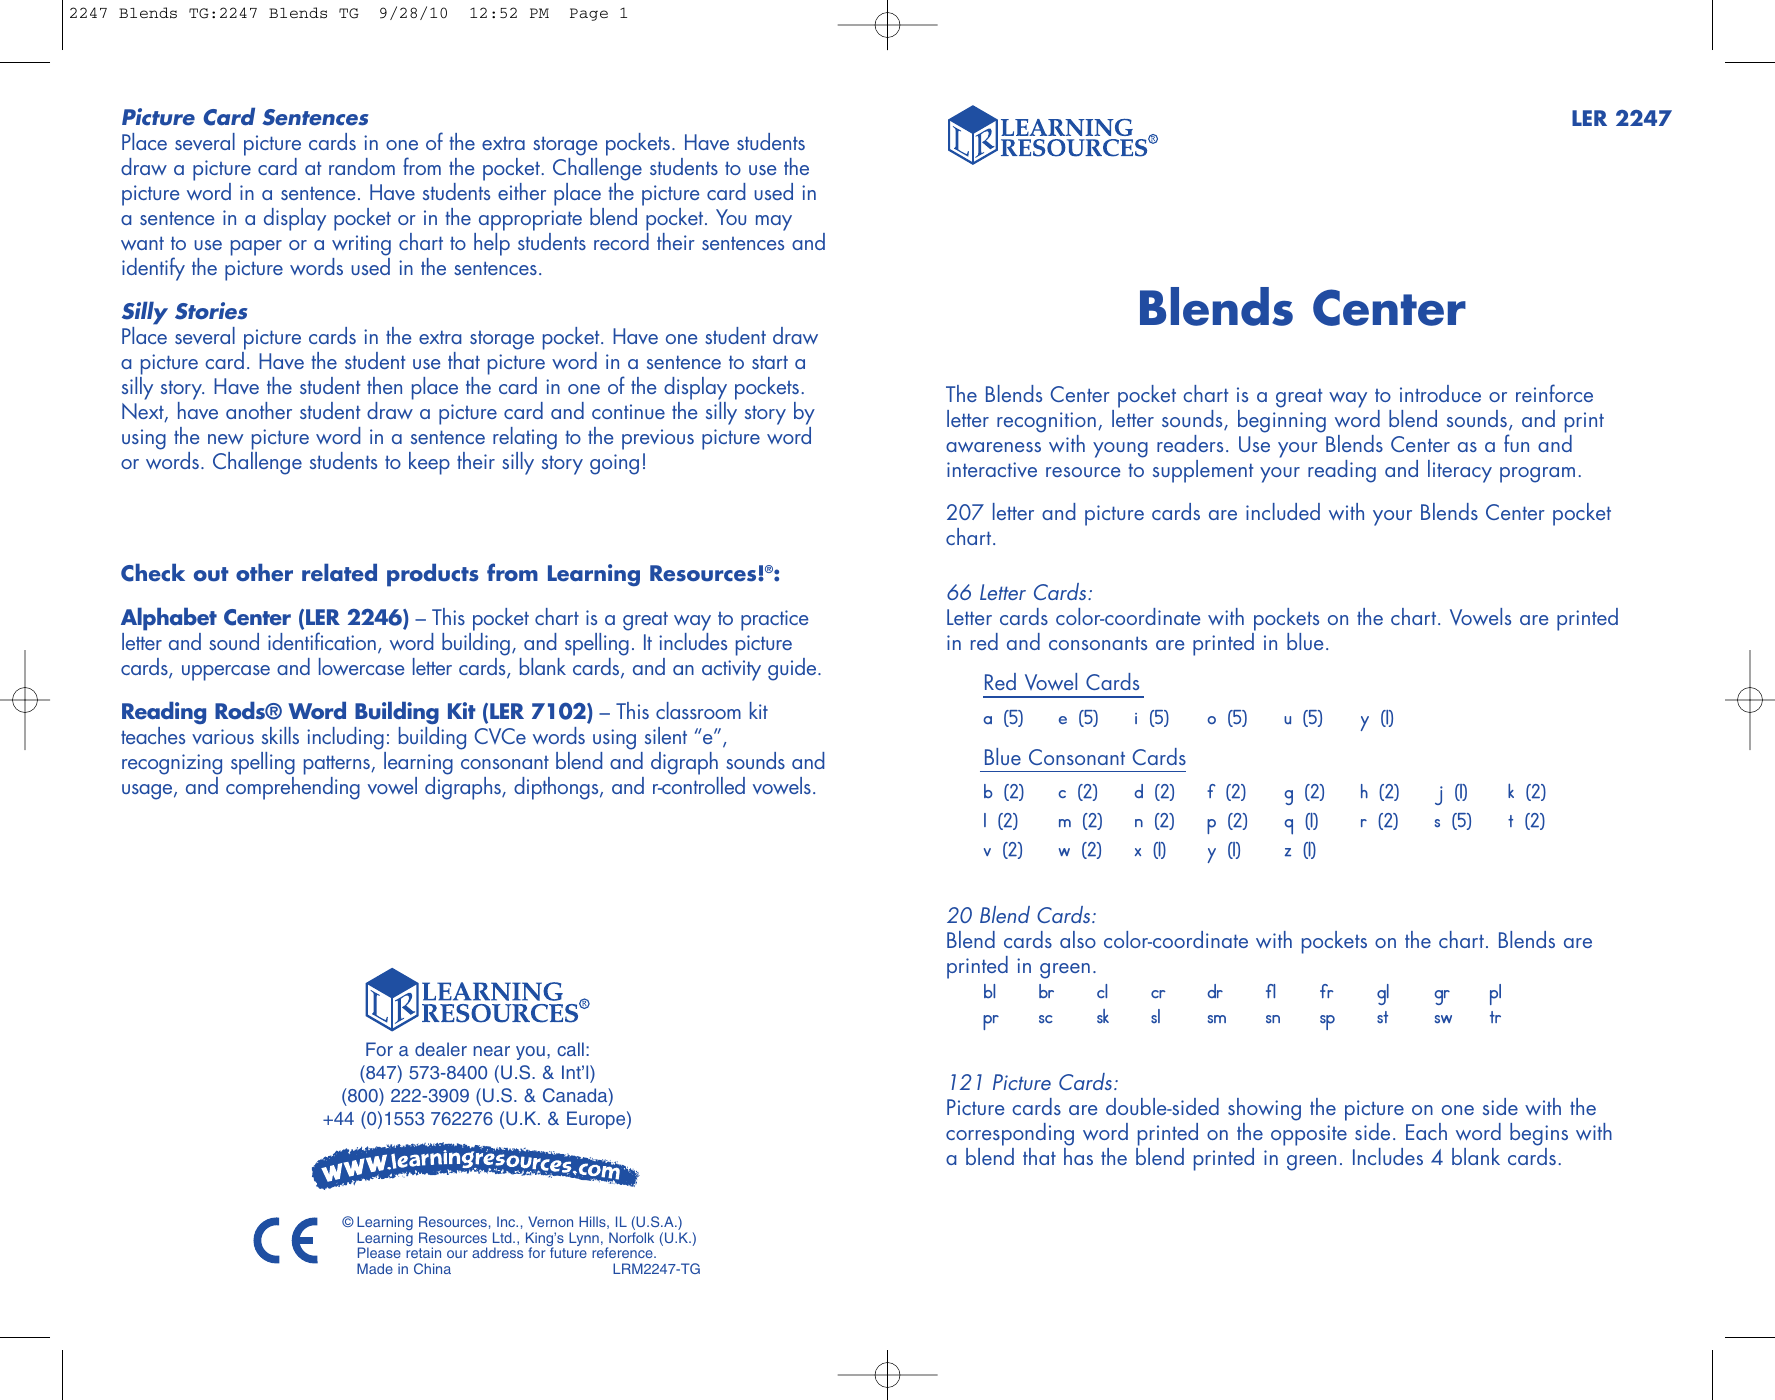 Blends Center Pocket Chart